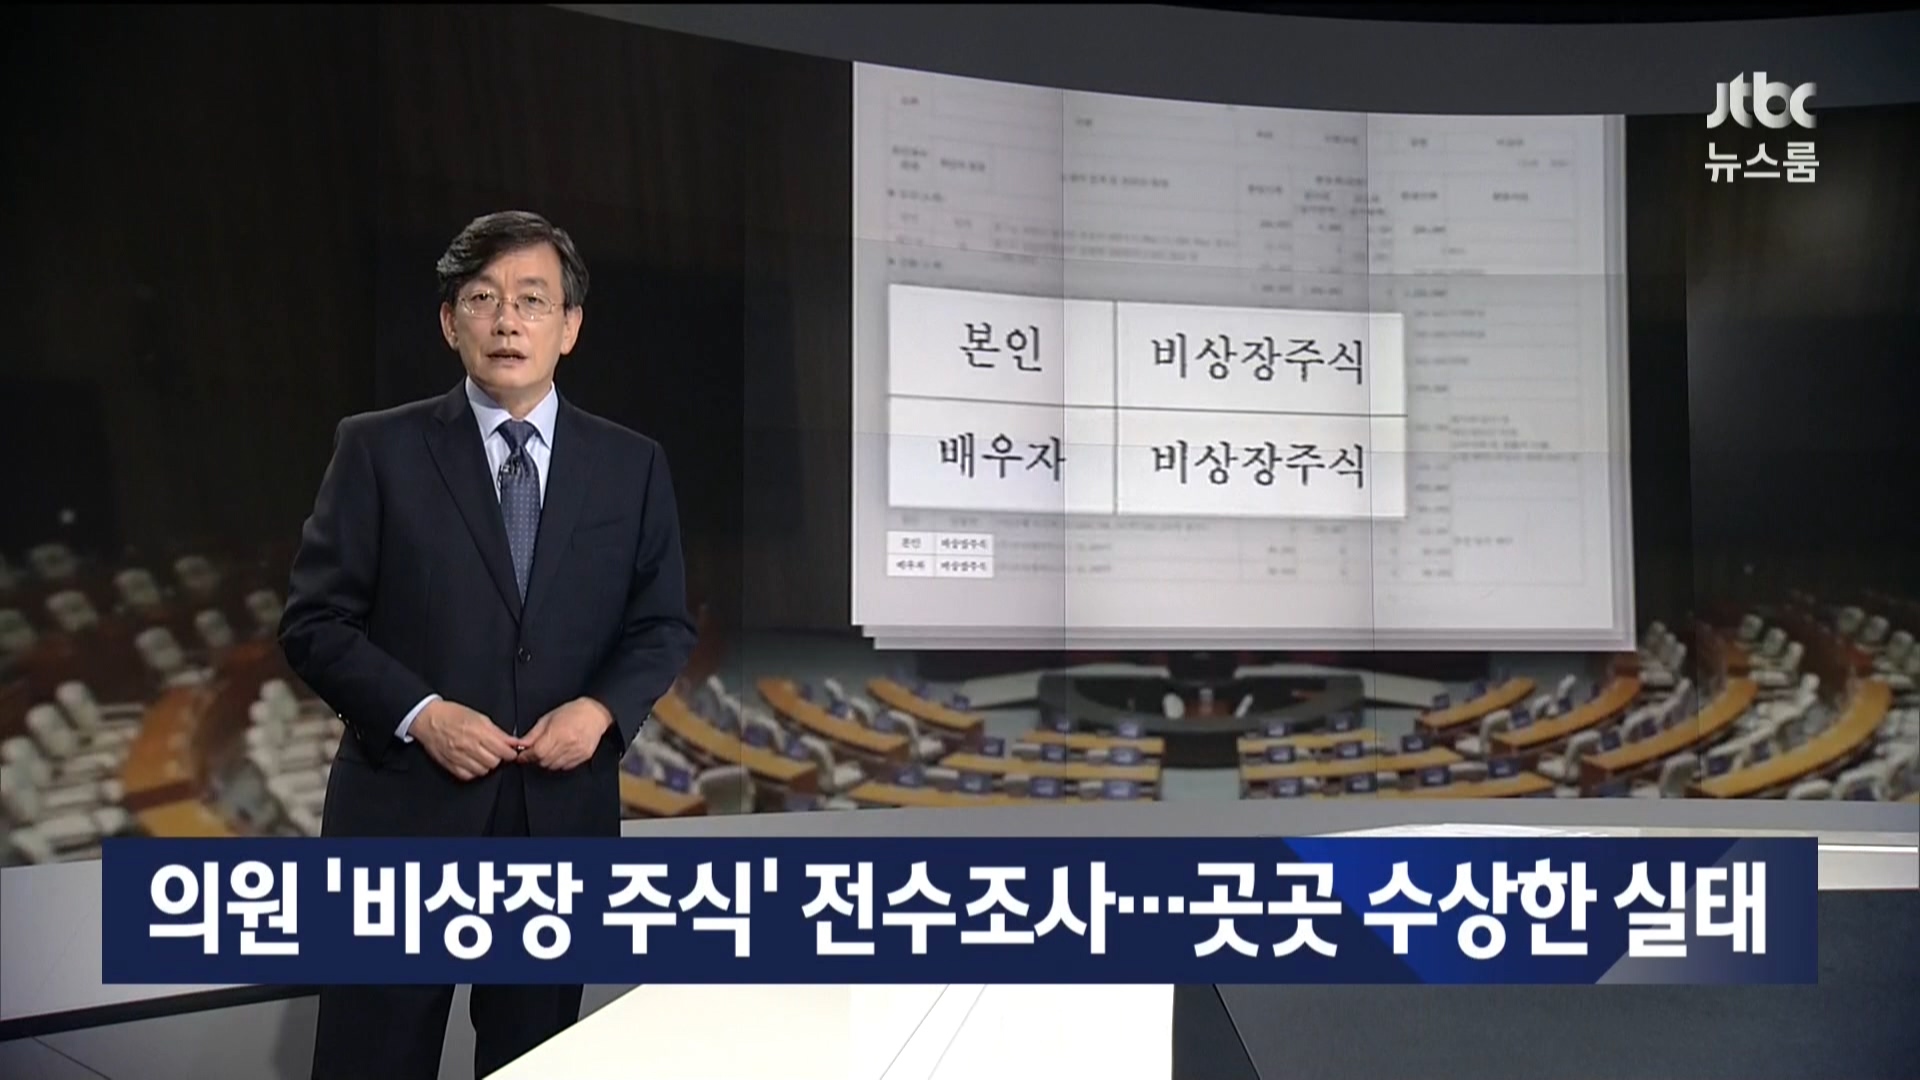 JTBC 비상장주식(7월 좋은 보도 방송부문).jpg